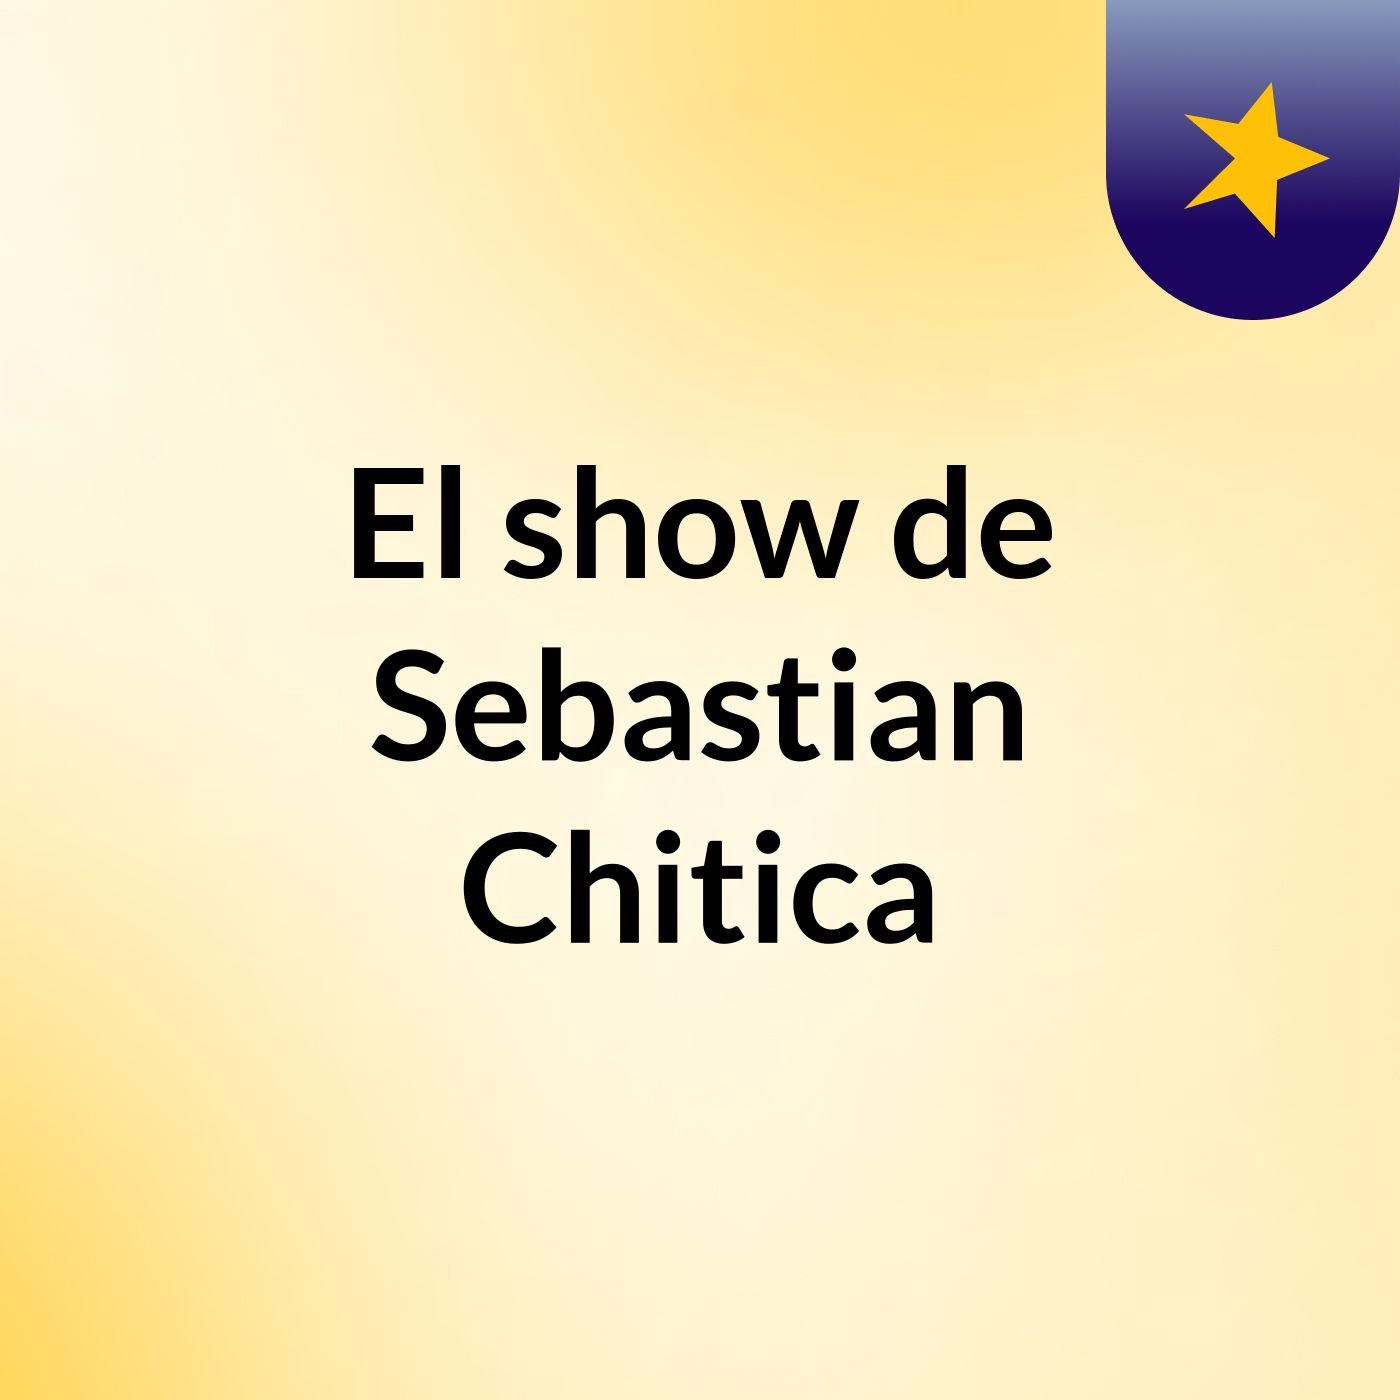 El show de Sebastian Chitica